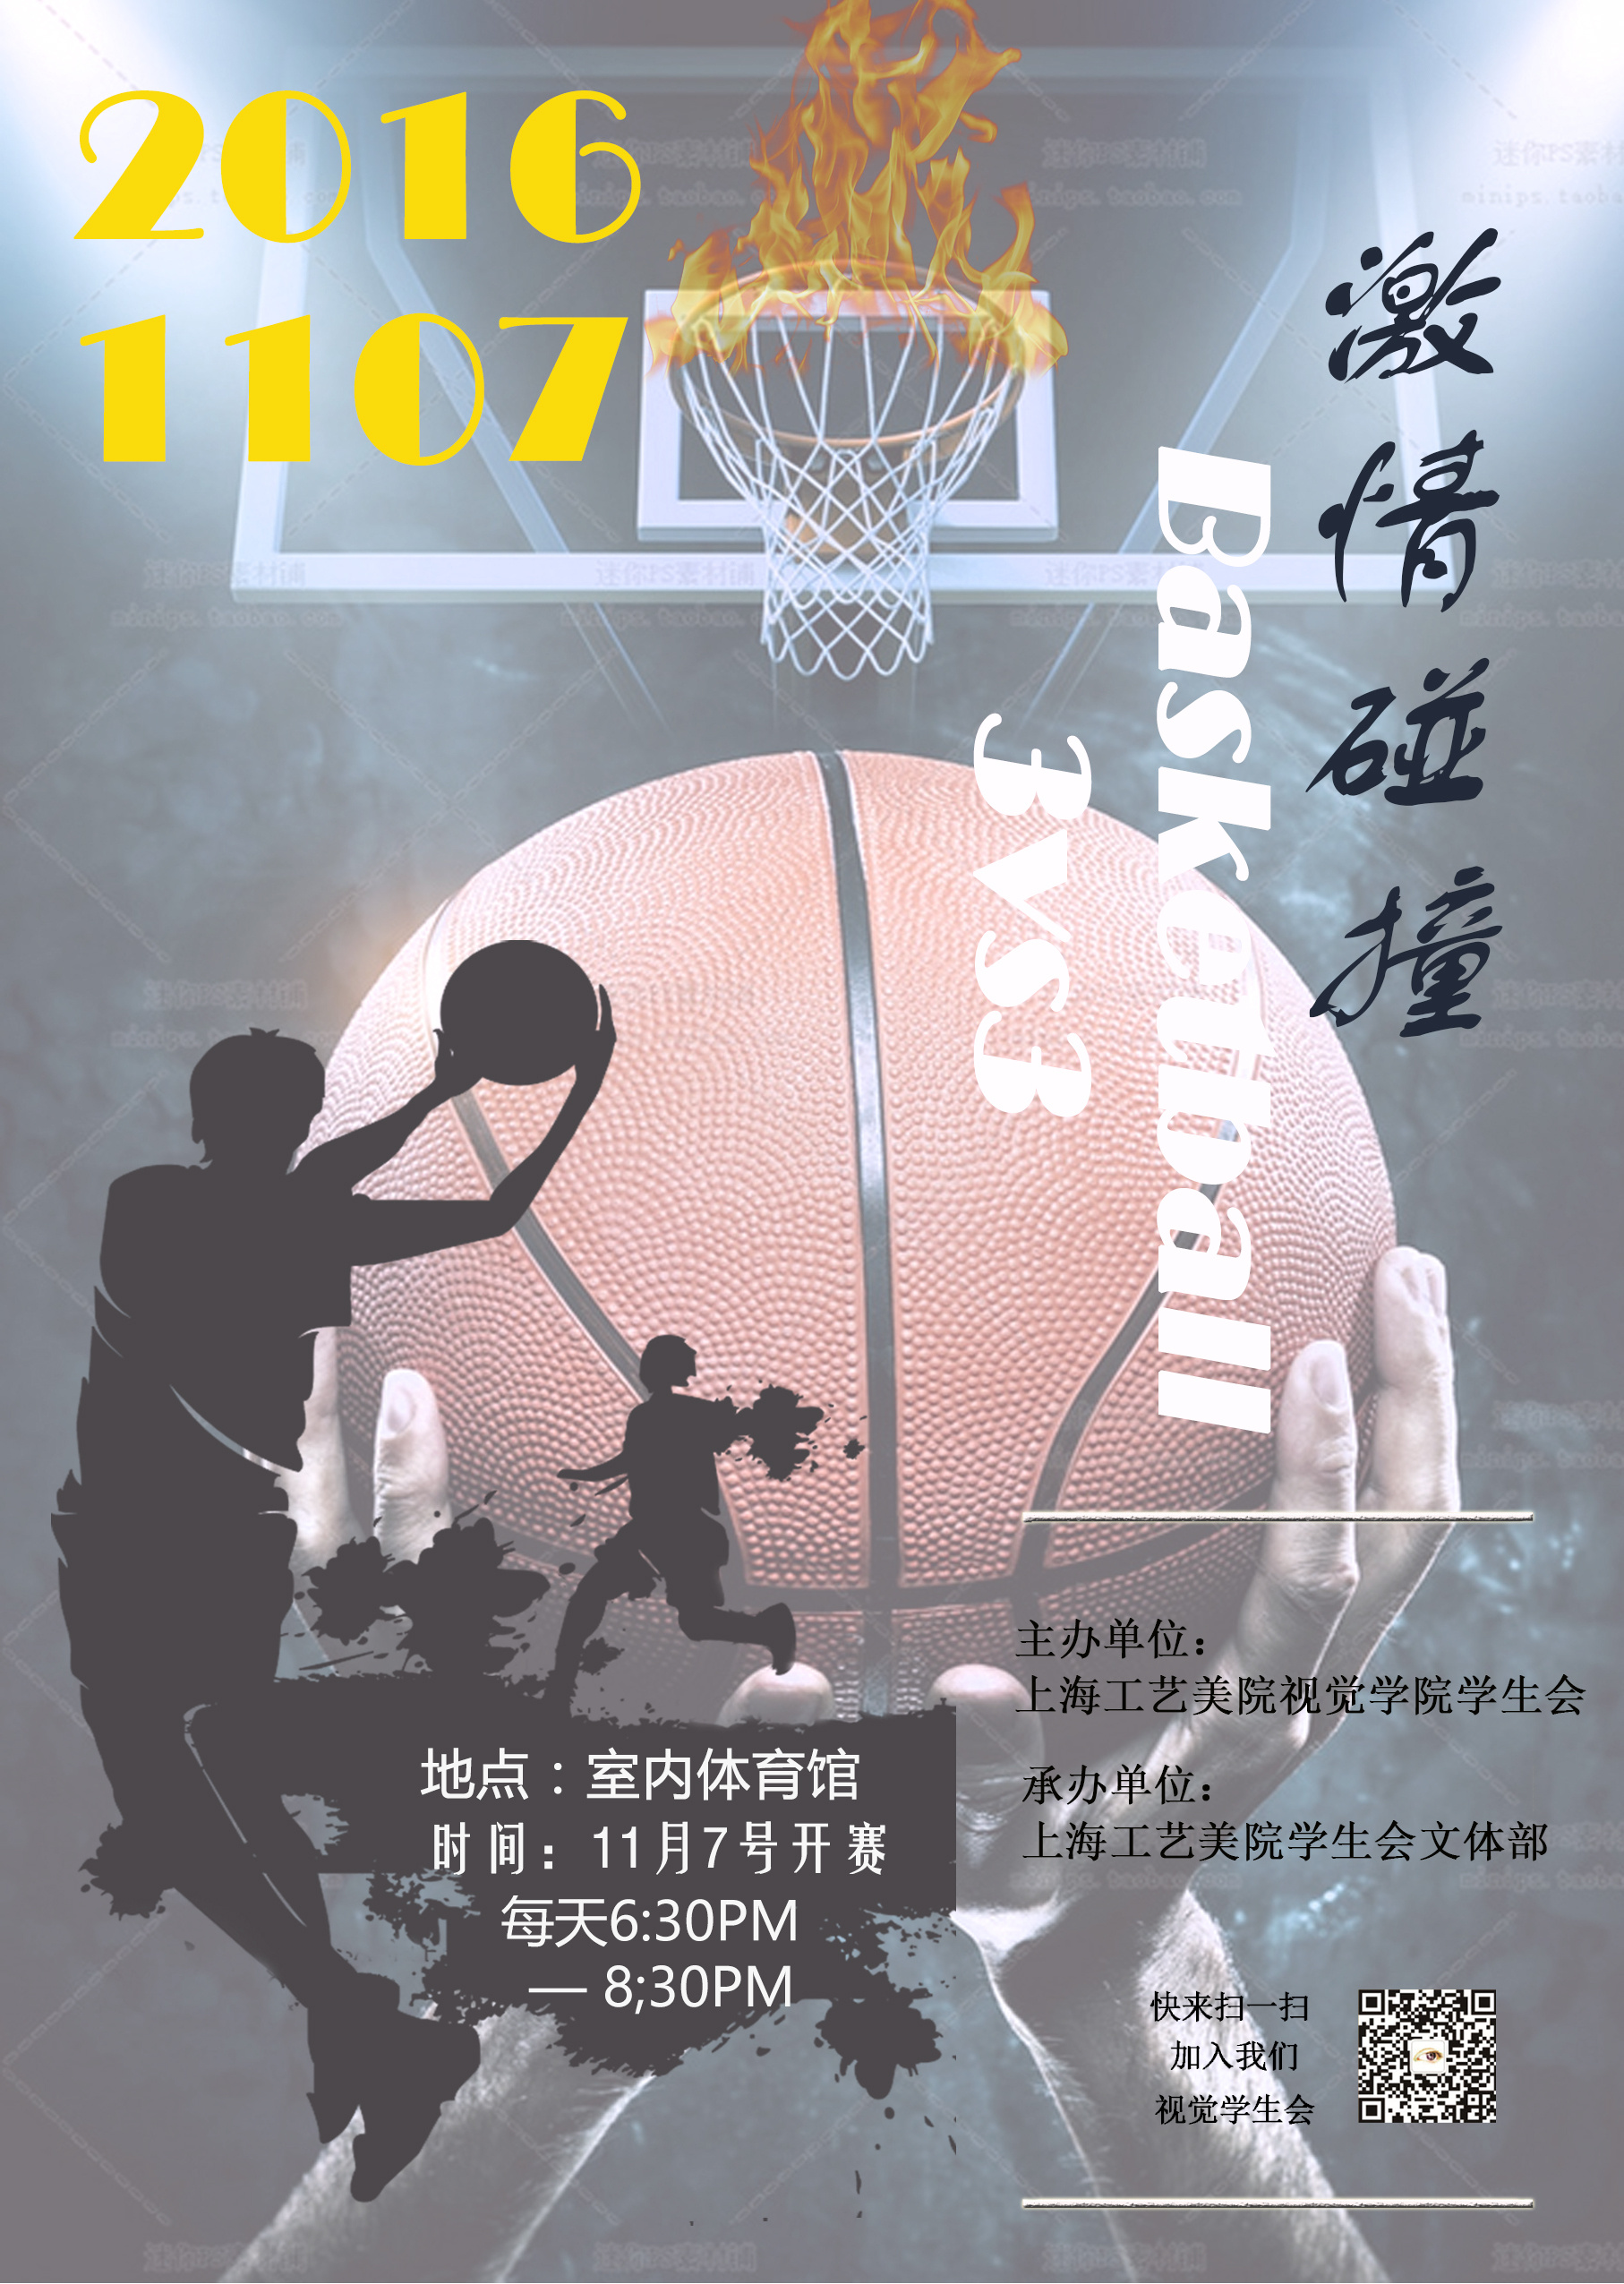 蓝褐色青春校园插画手绘青年节节日分享中文海报 - 模板 - Canva可画